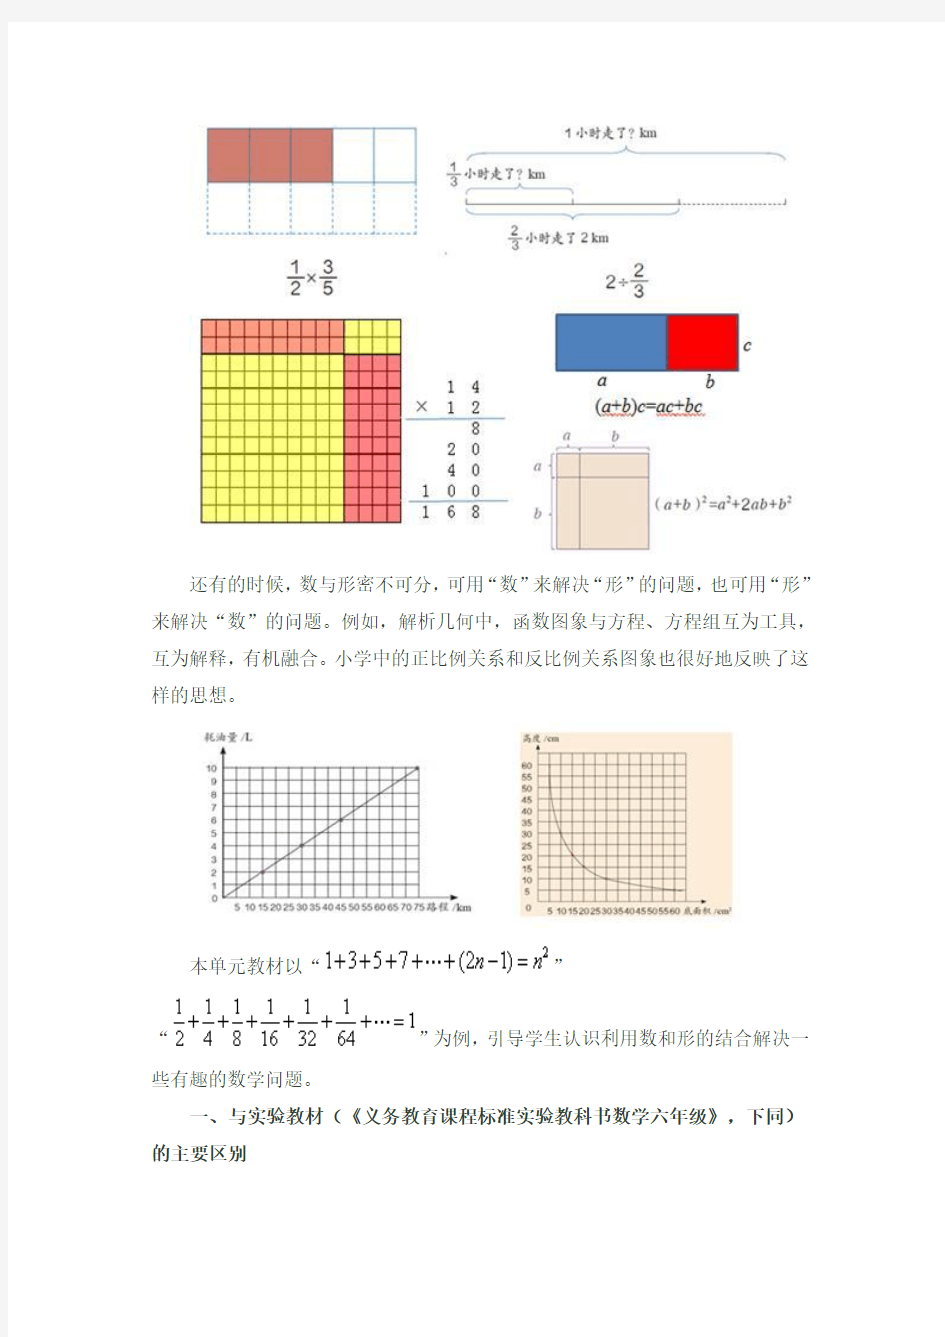 人教版数学六年级上册第八单元《数学广角──数与形》教材分析